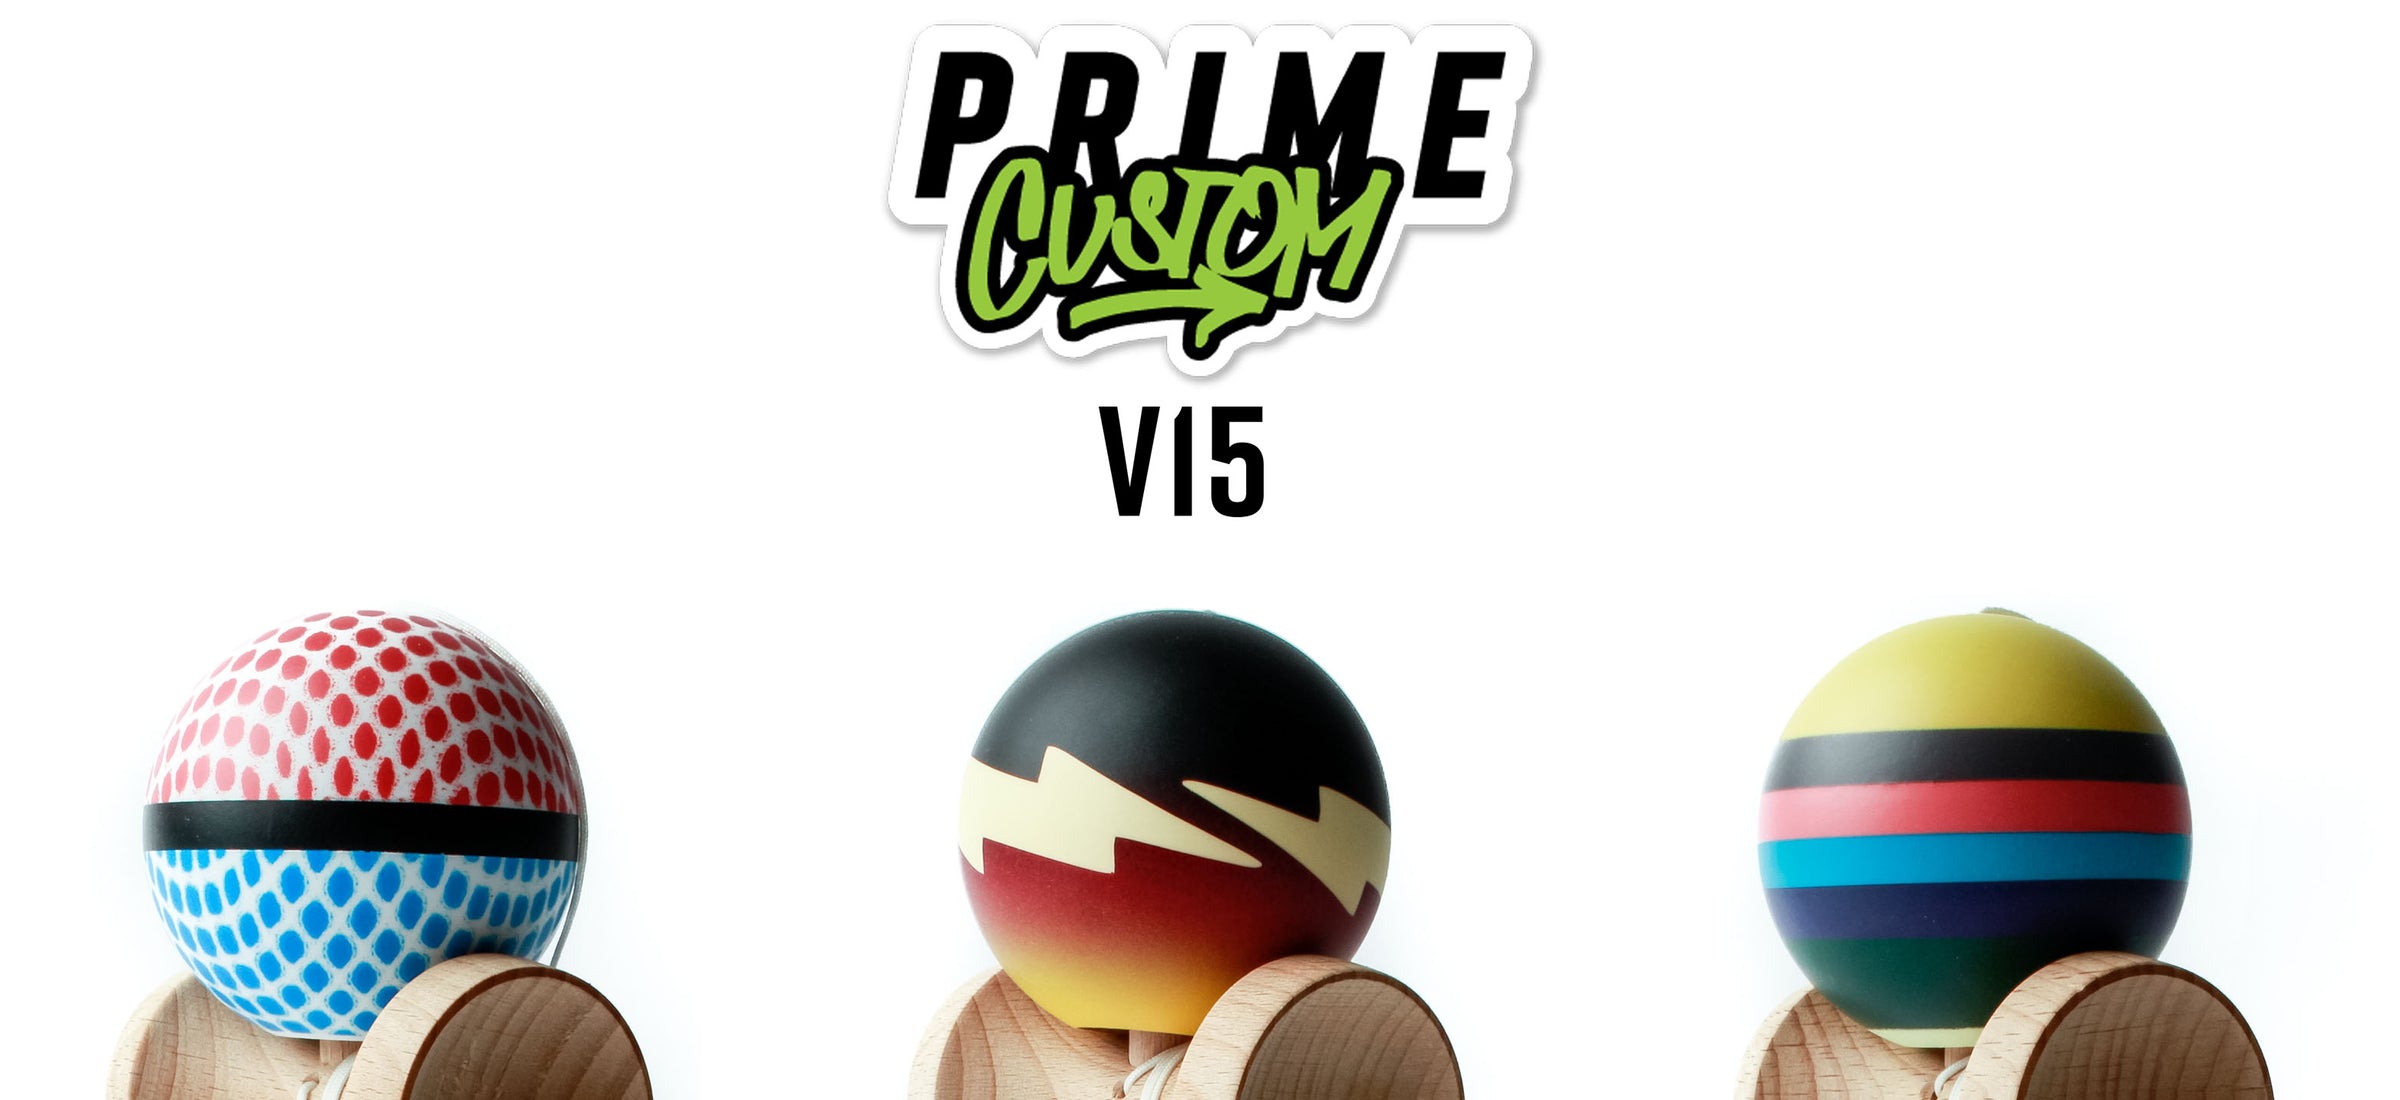 Prime Custom V15